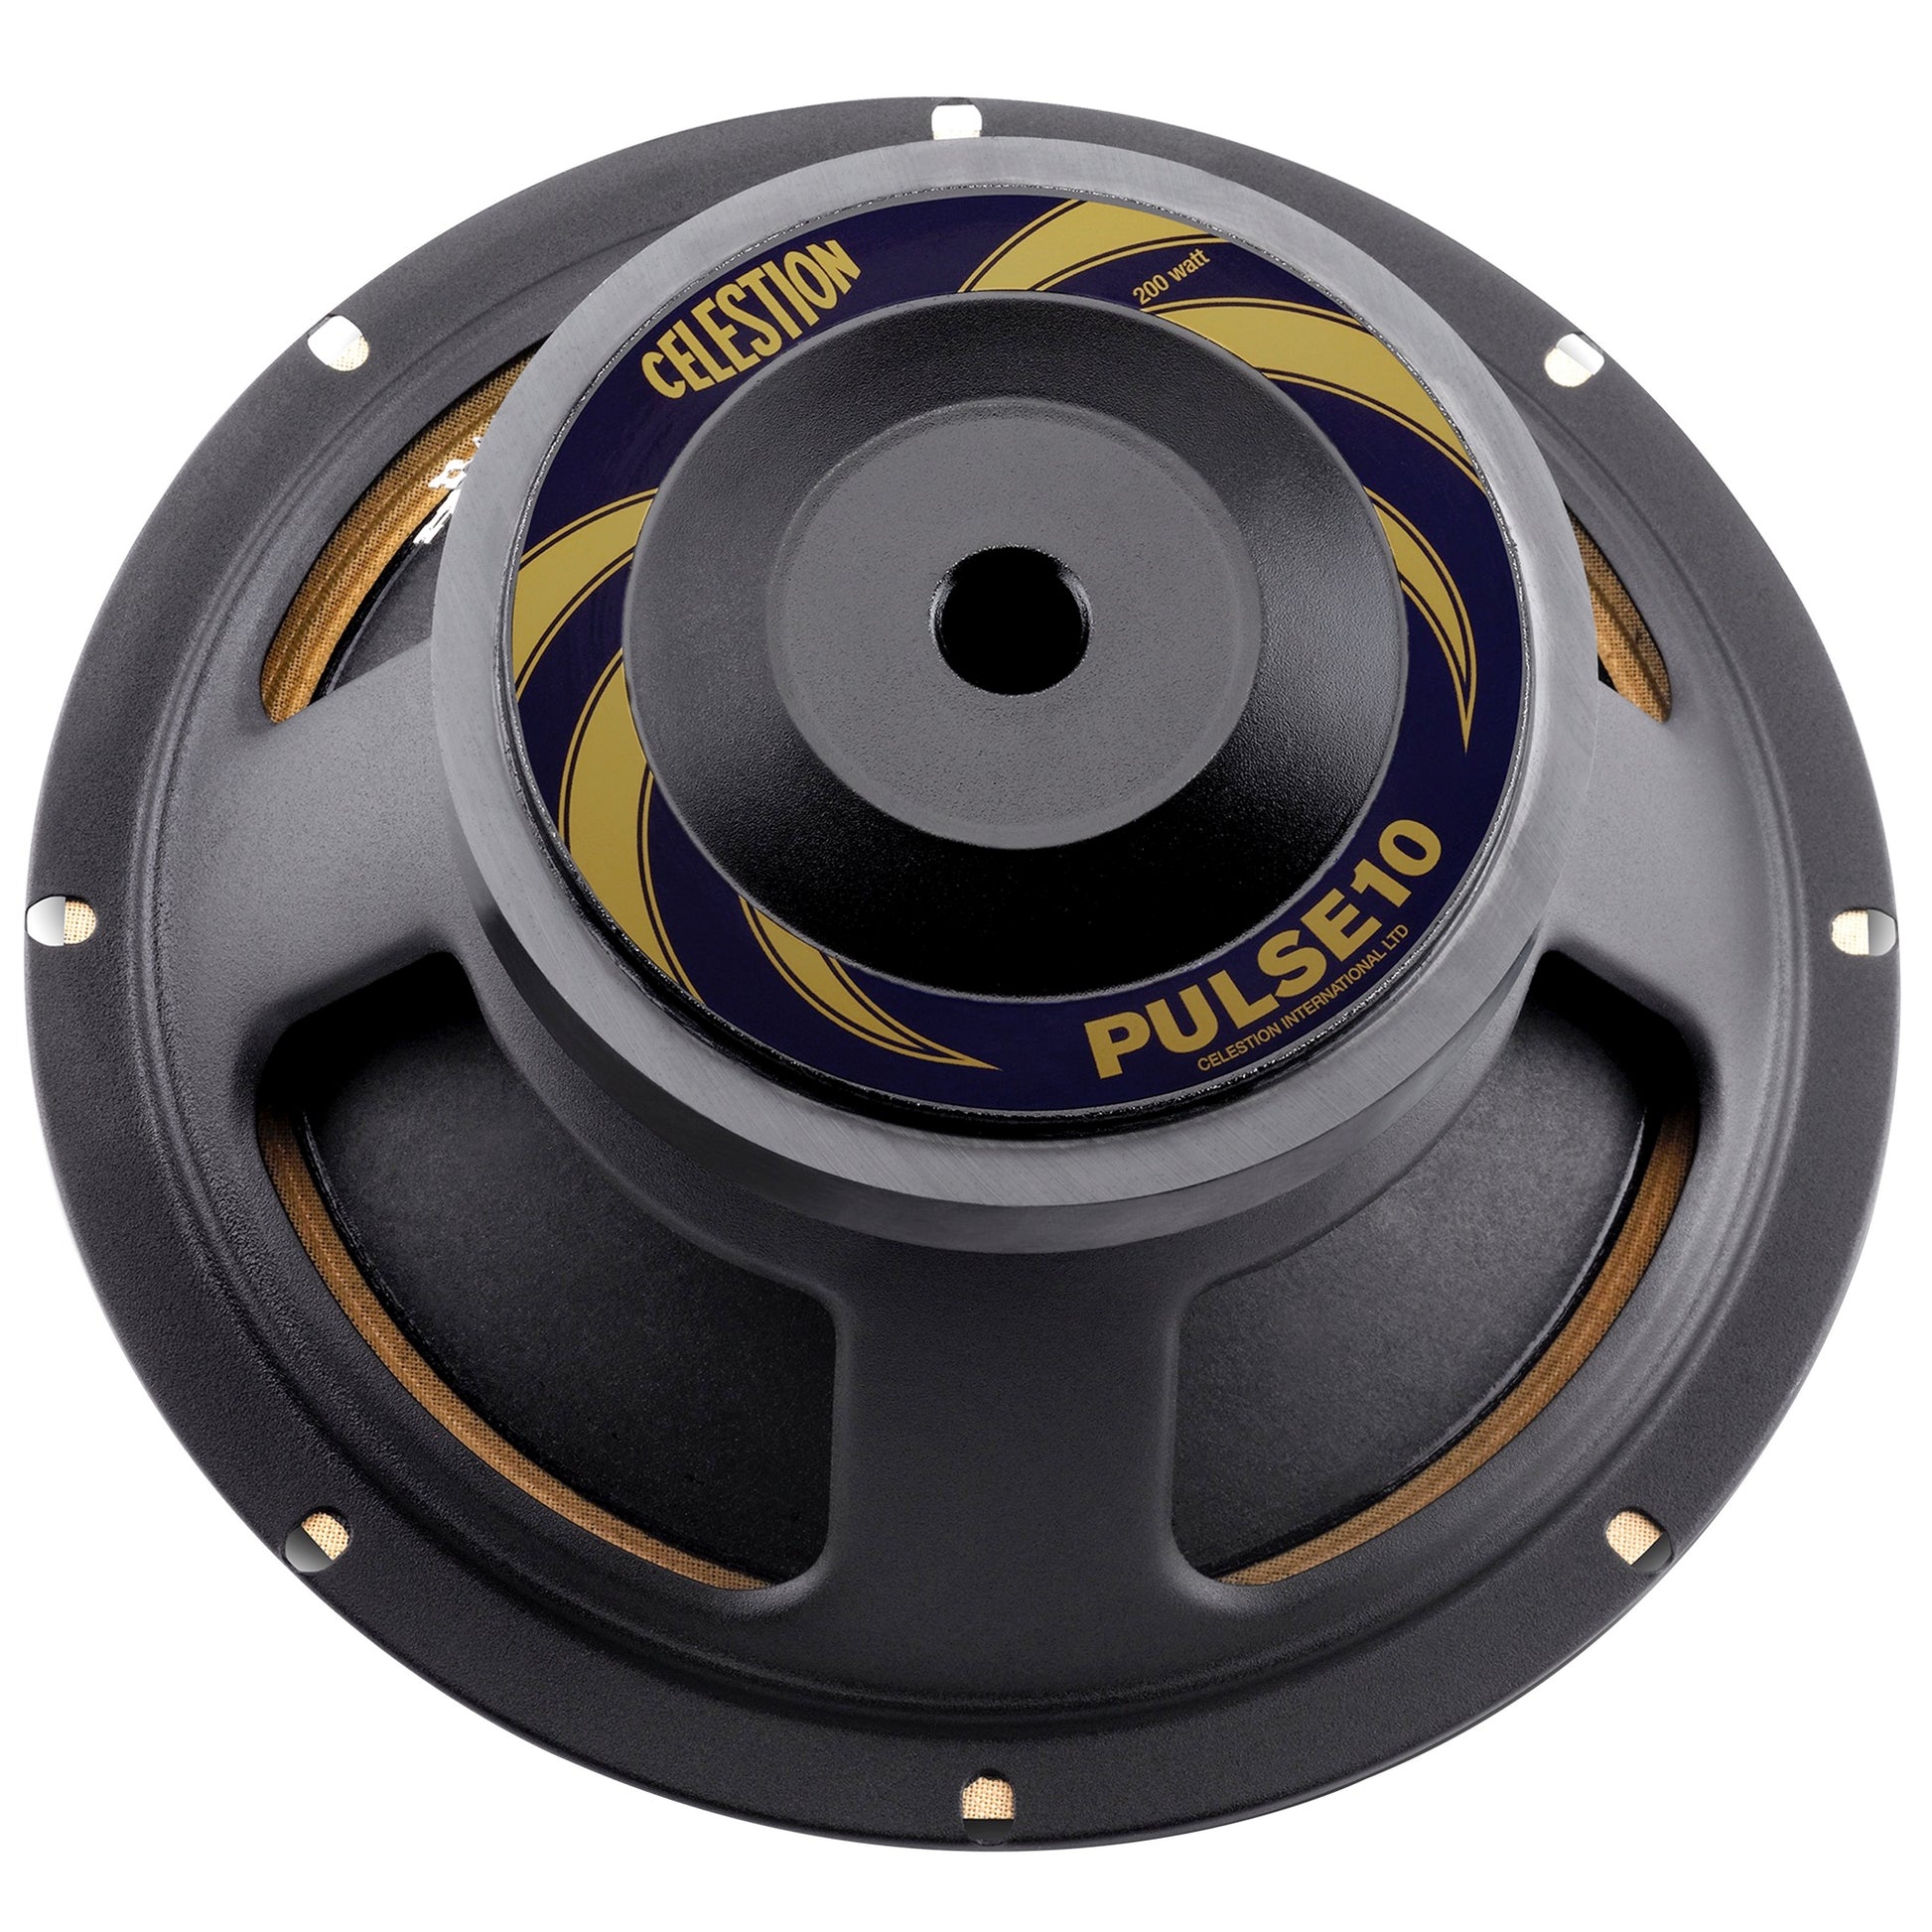 Celestion PULSE10 Bass Speaker (200 Watts, 10 Inch), 8 Ohms